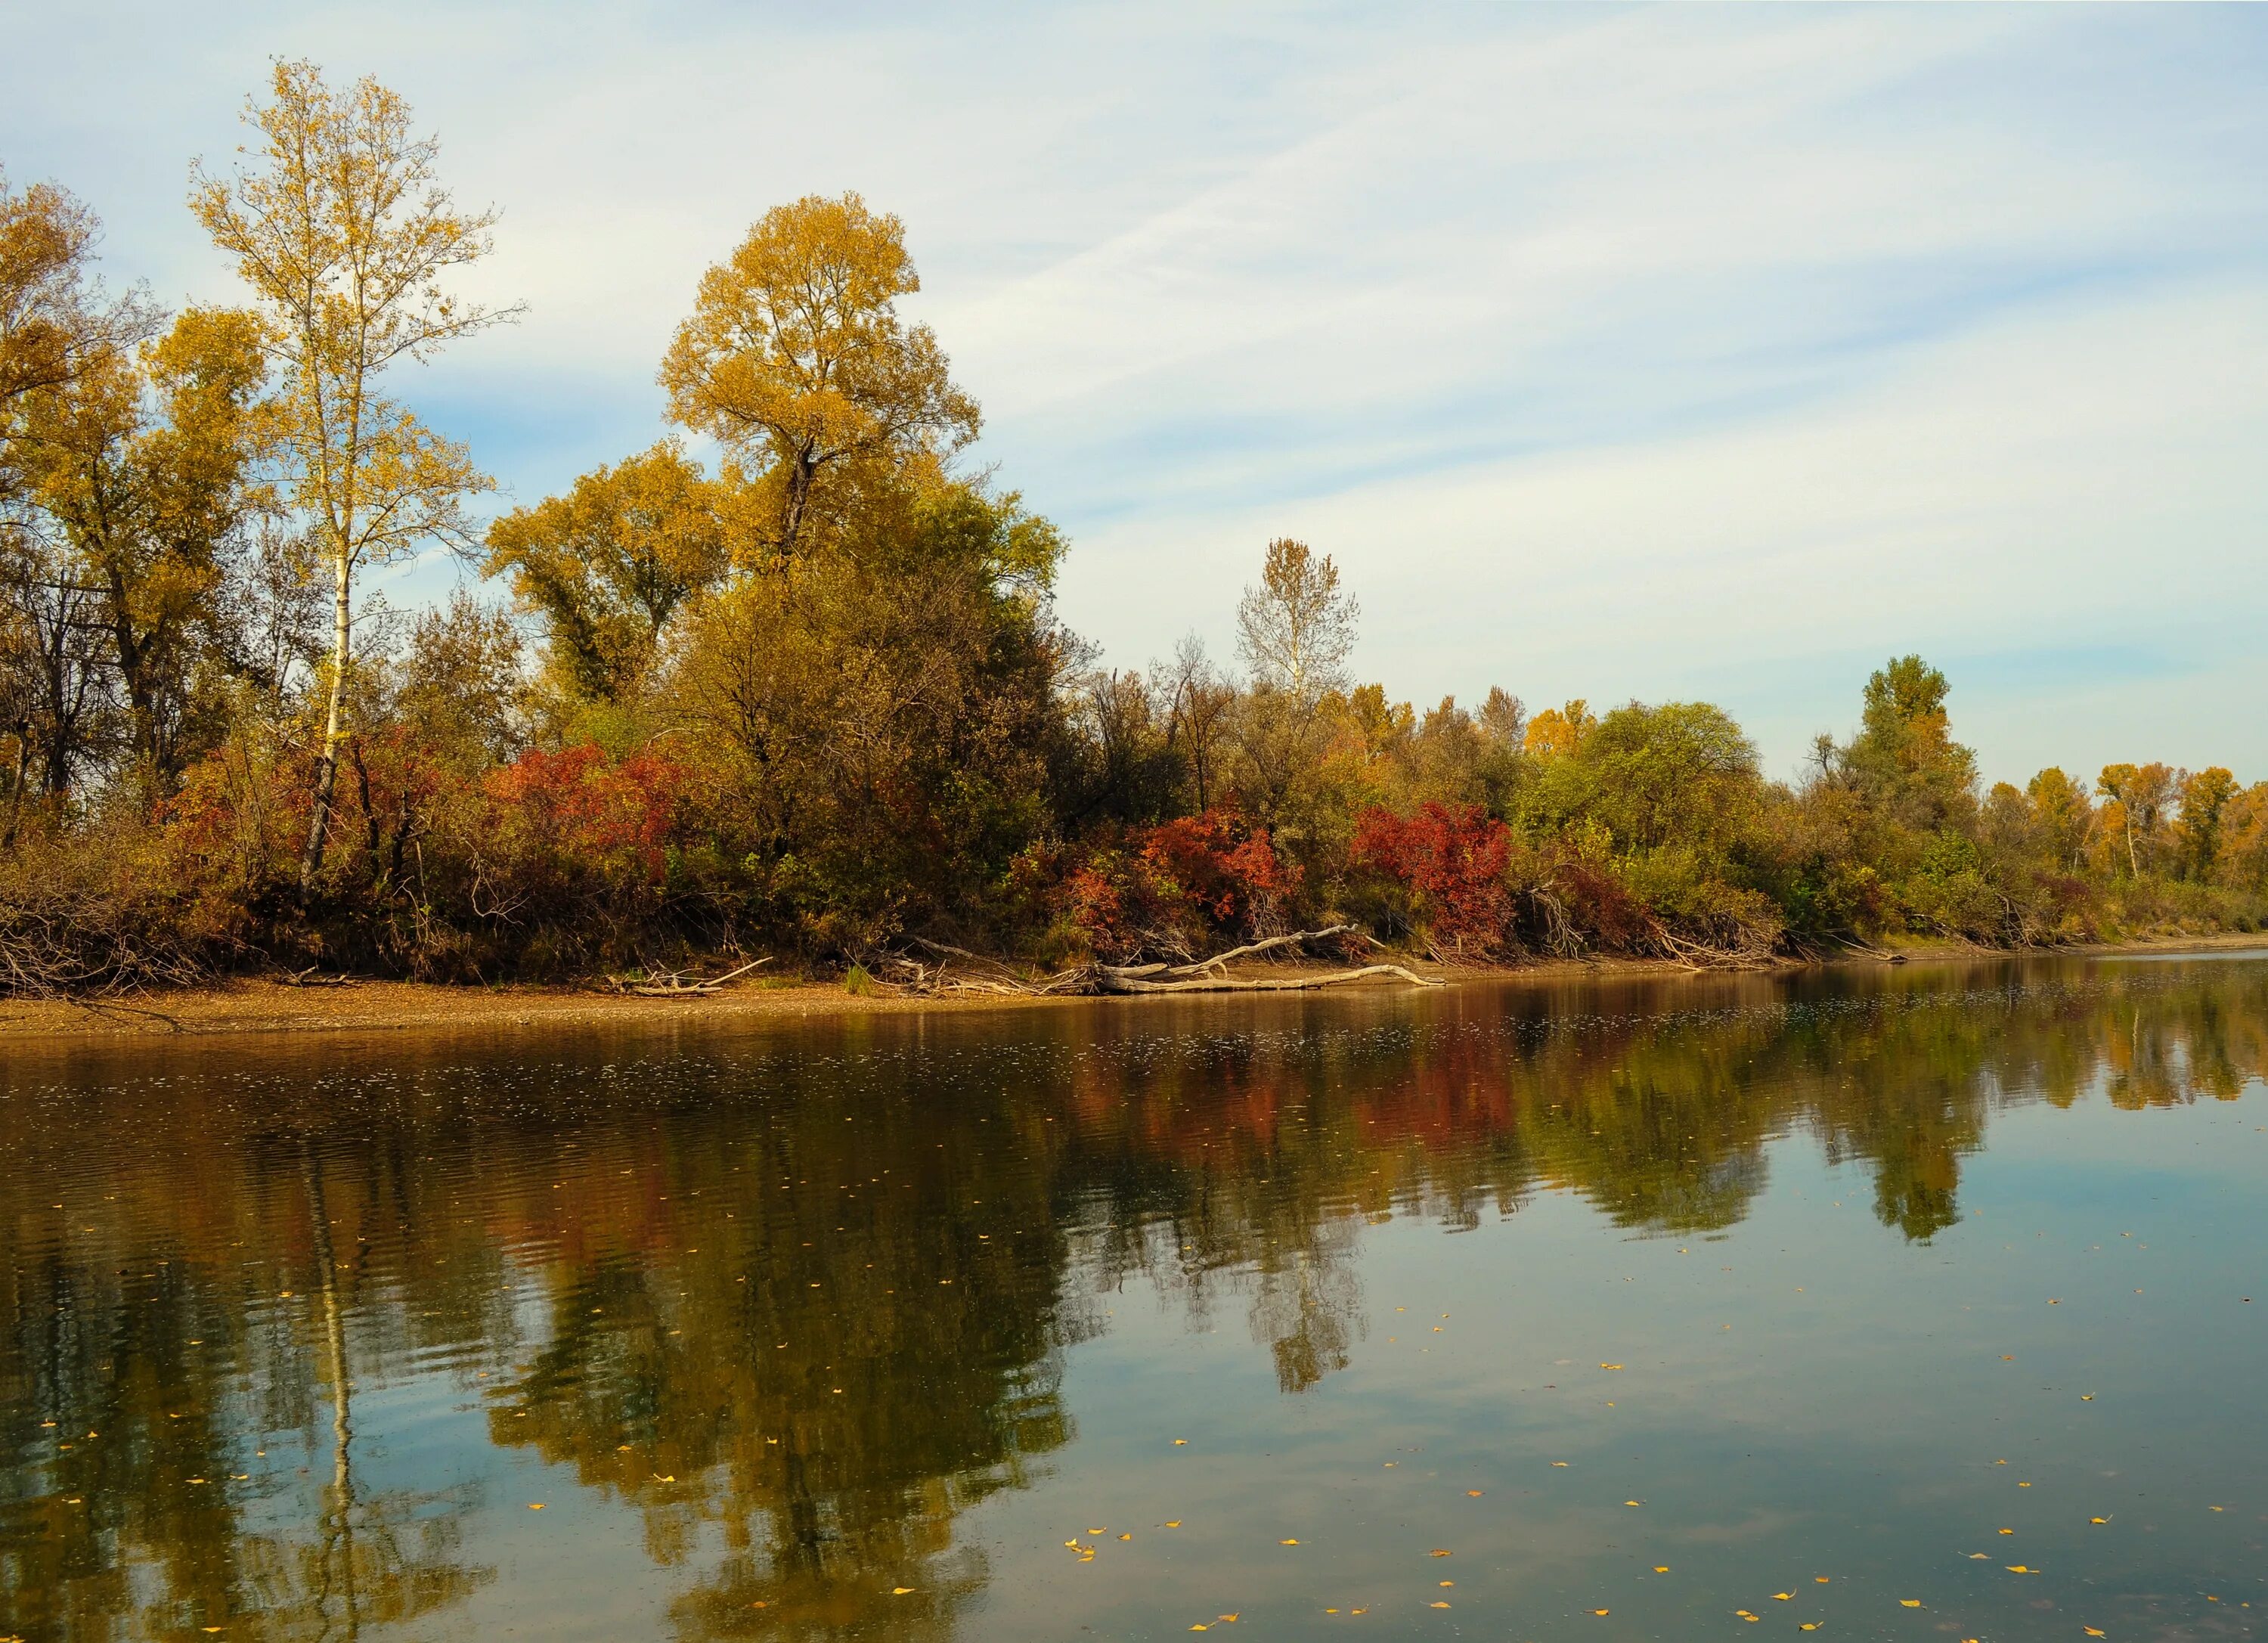 Размышления осени. Осень речка. Пейзажи Донбасса. Осень отражение в воде. Пейзажи с отражением деревьев в воде.